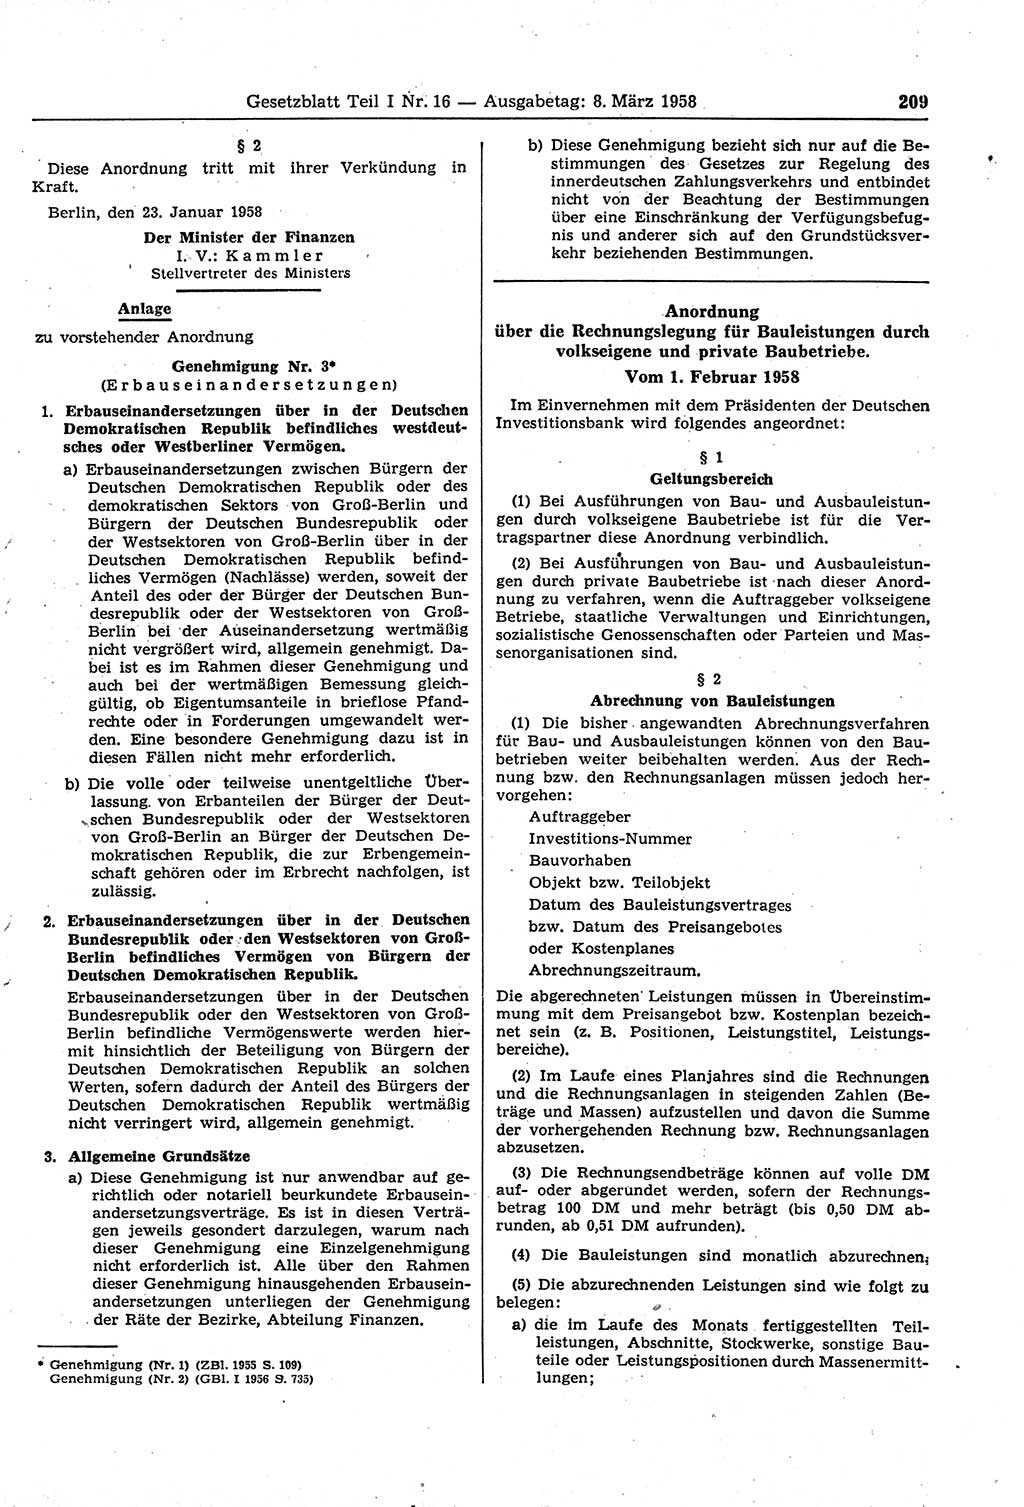 Gesetzblatt (GBl.) der Deutschen Demokratischen Republik (DDR) Teil Ⅰ 1958, Seite 209 (GBl. DDR Ⅰ 1958, S. 209)